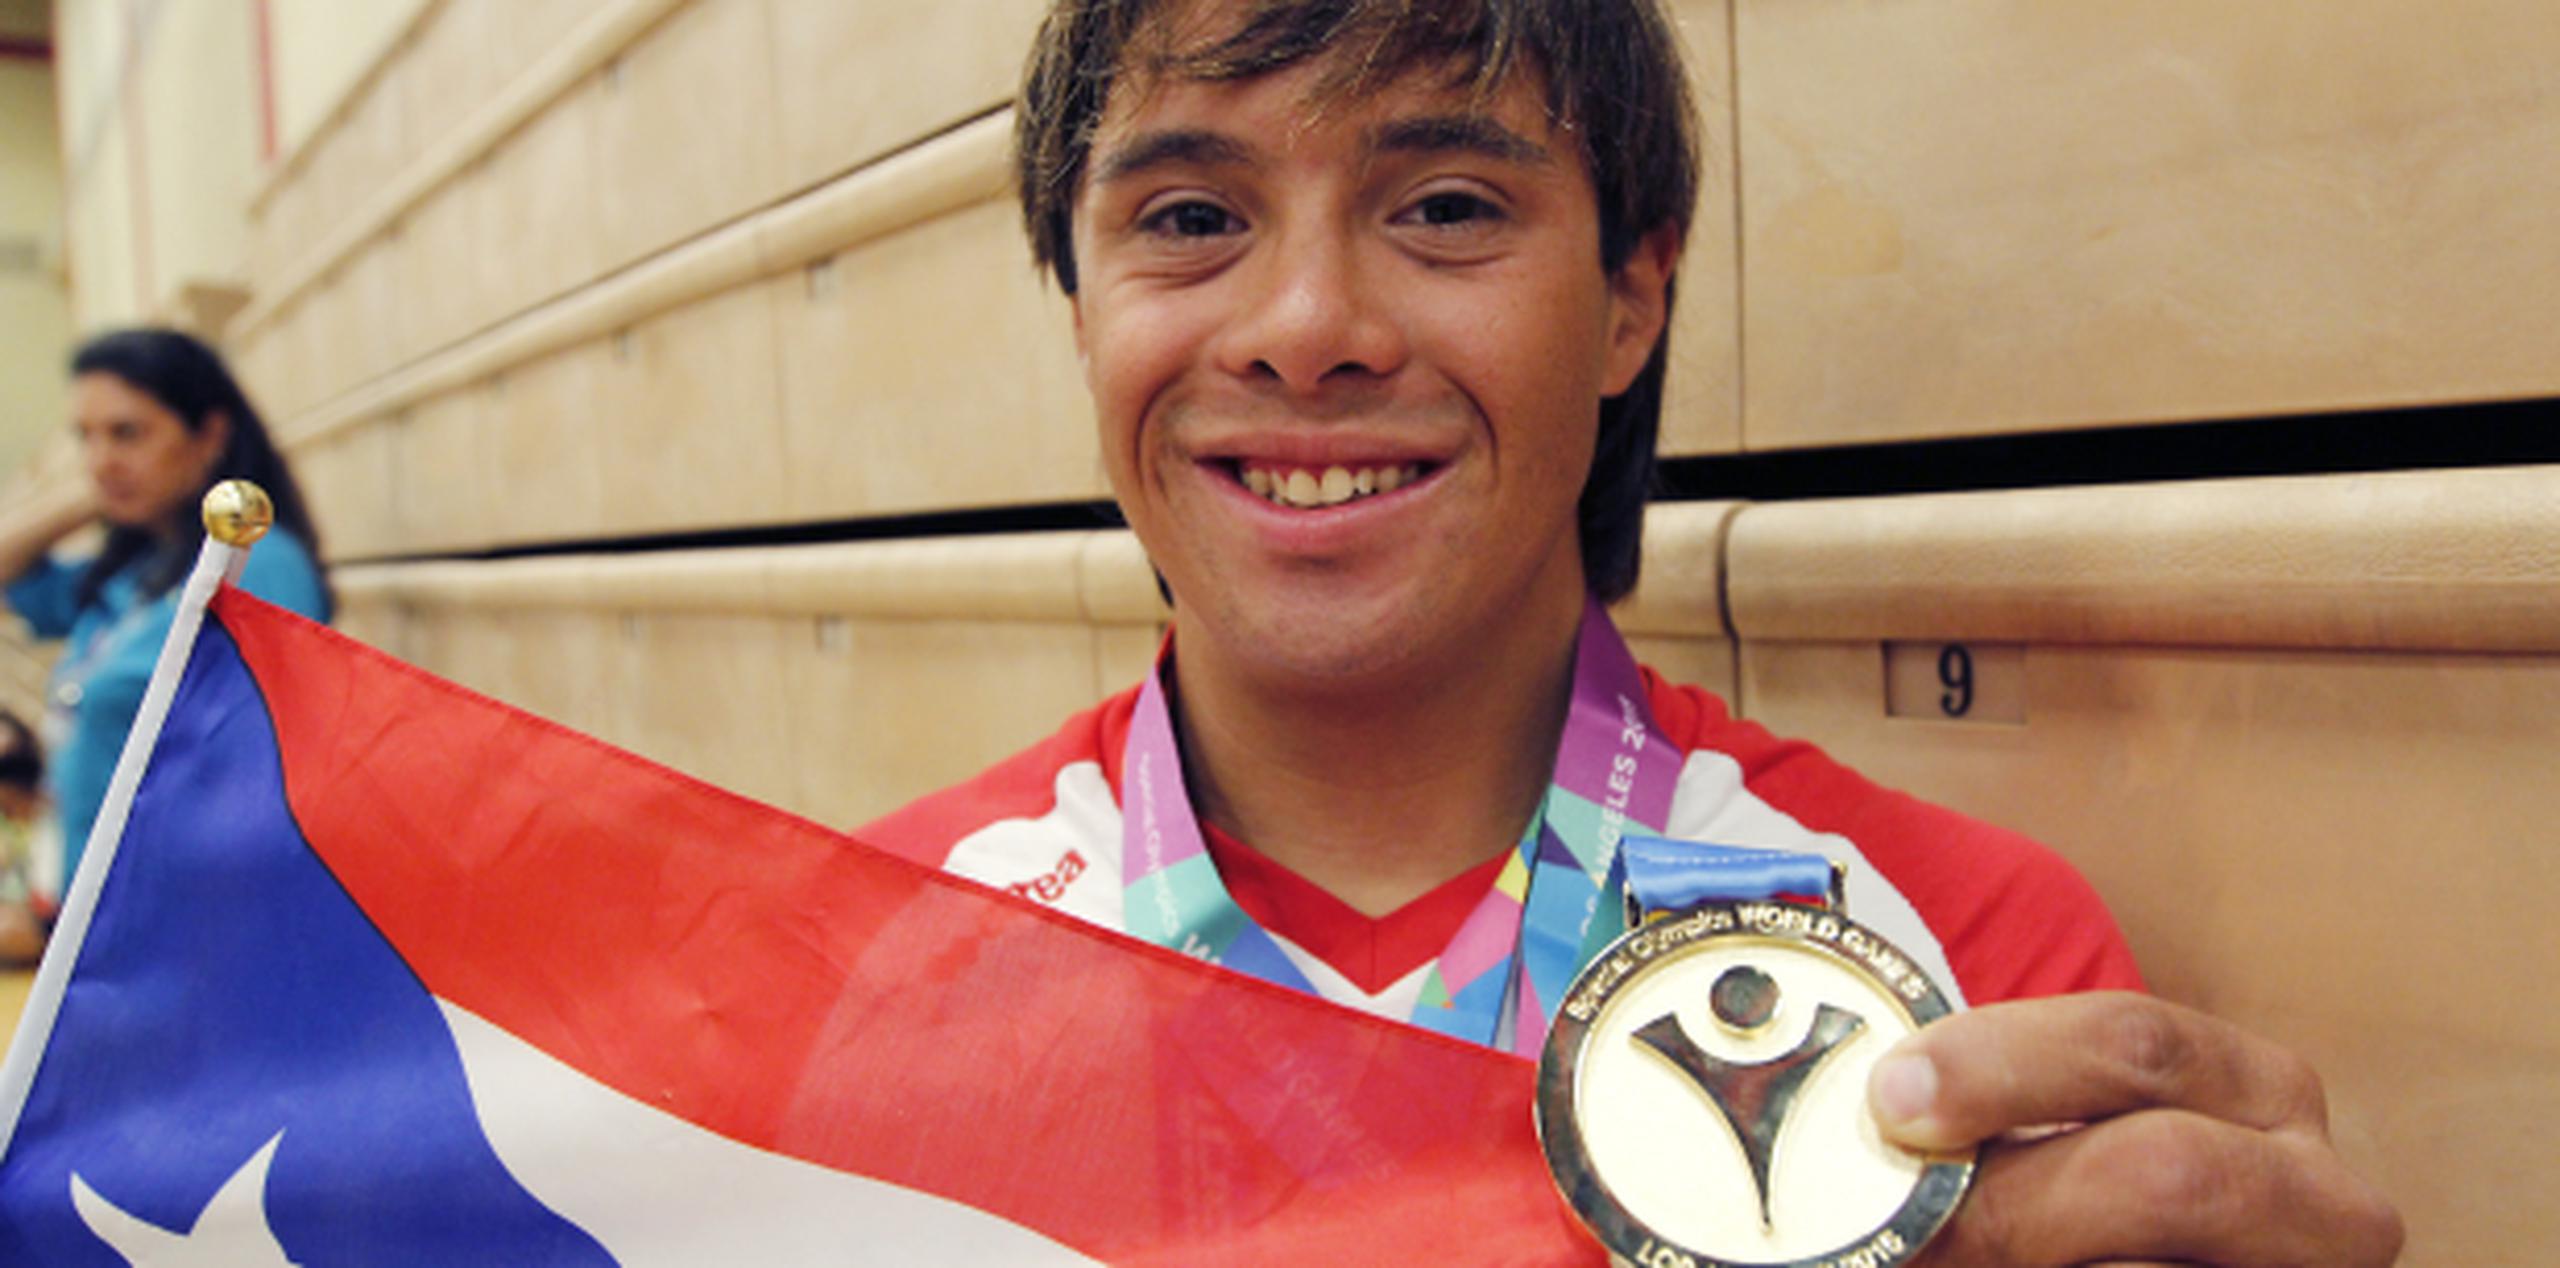 El nadador Heriberto Torres ganó medalla de oro en 400 metros libre en los Juegos Mundiales de Olimpiadas Especiales. (michelle.estrada@agfrmedia.com)